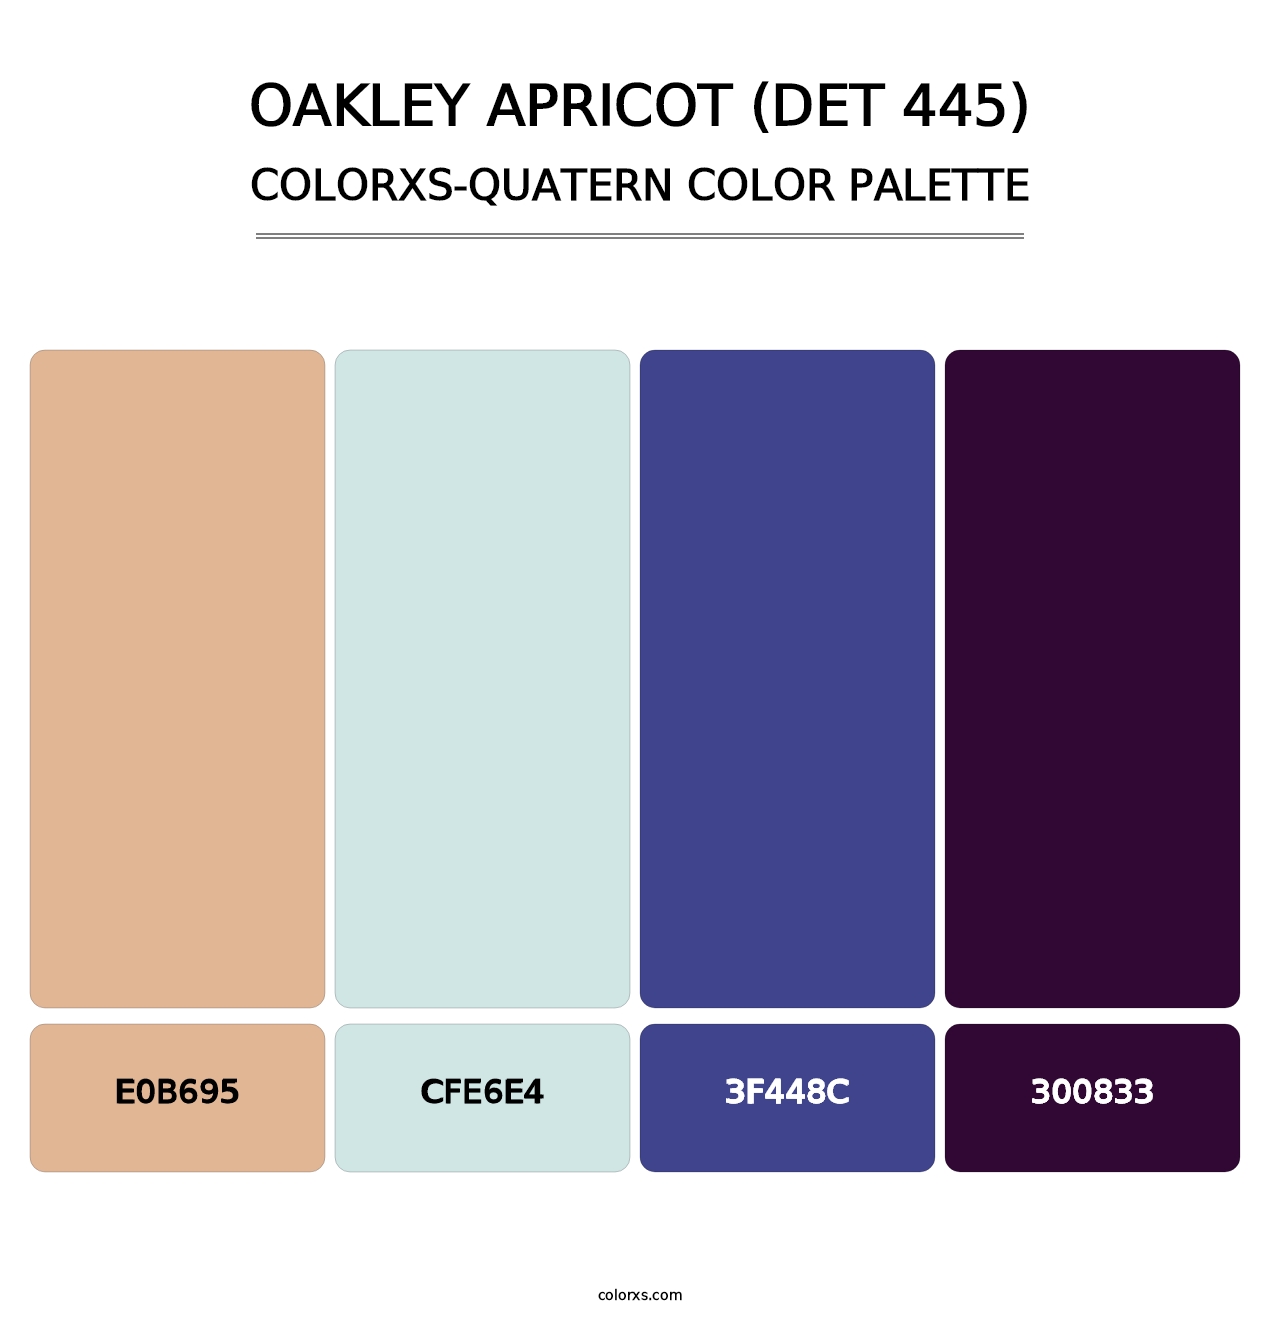 Oakley Apricot (DET 445) - Colorxs Quatern Palette